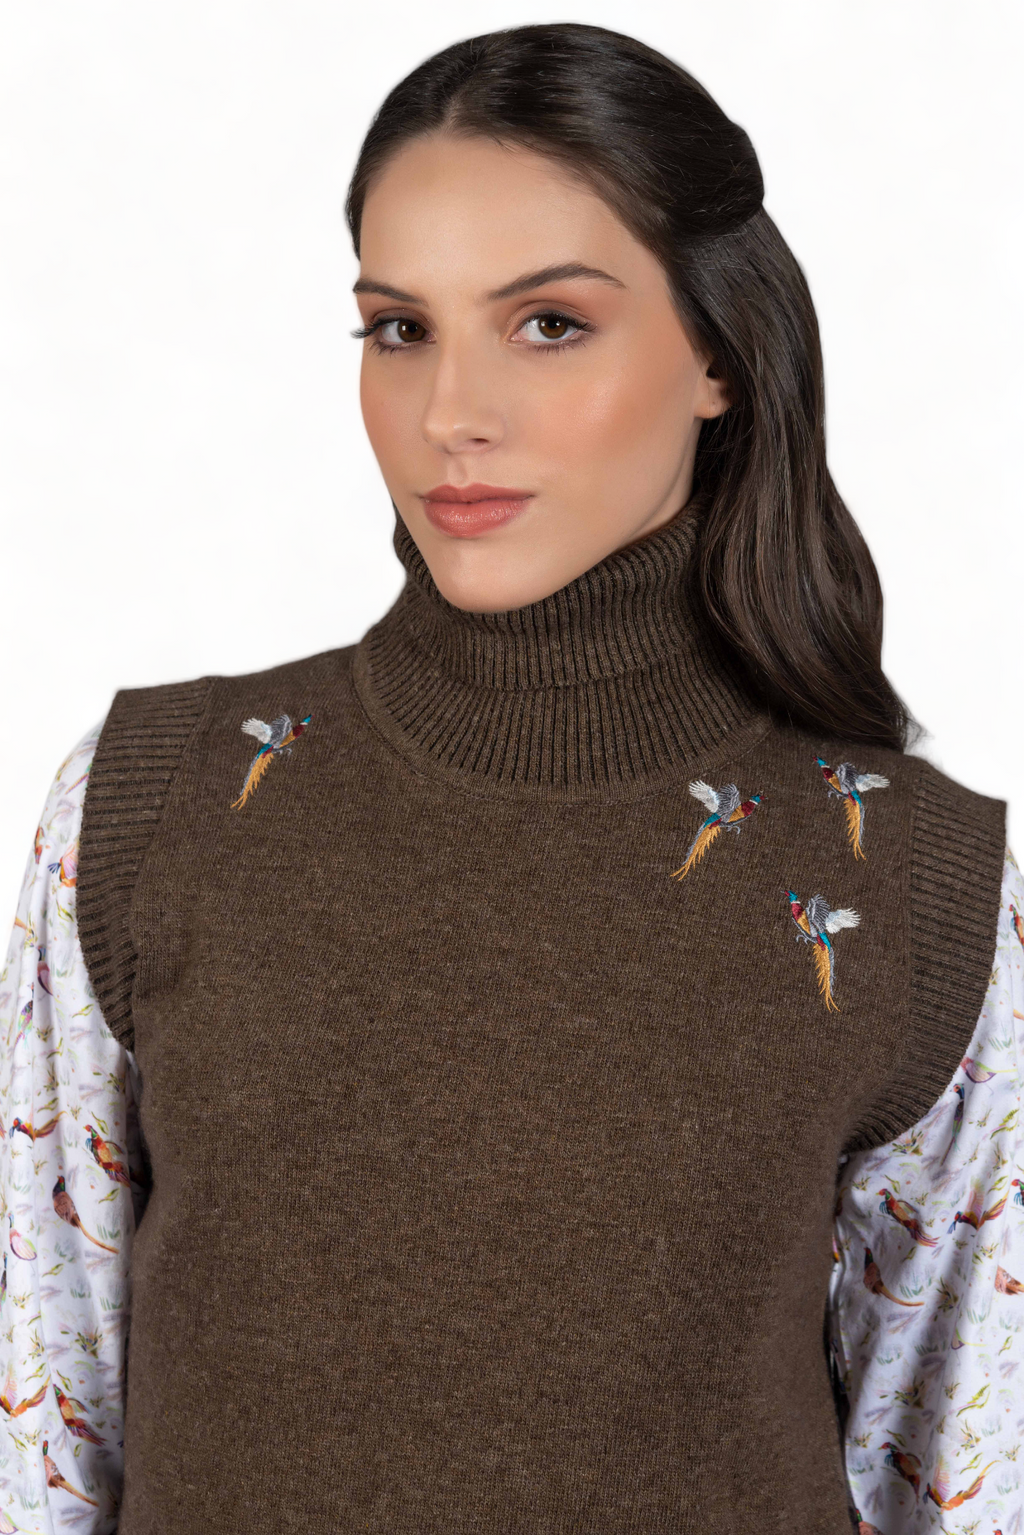 Pheasant Sleeveless Sweater - Taupe - Hound & Hare